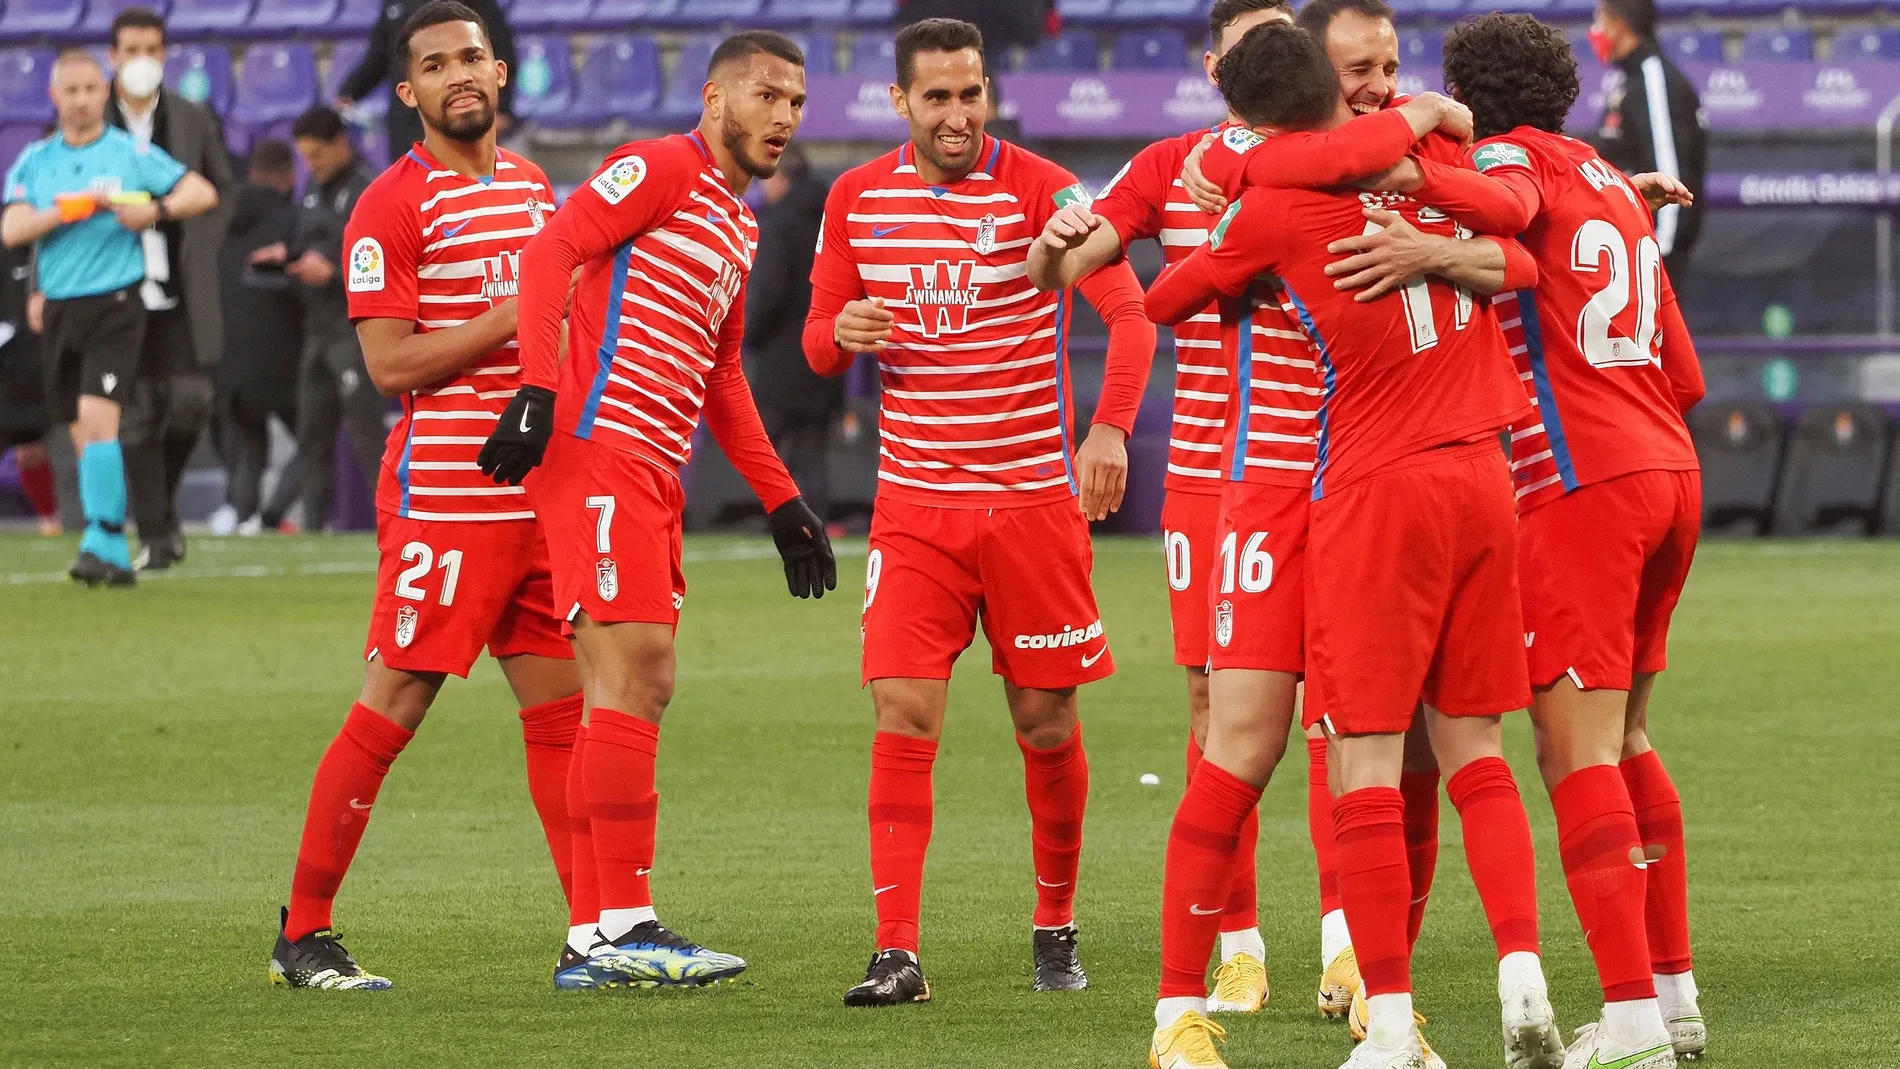 os jugadores del Granada celebran su gol ante el Valladolid en el partido de LaLiga que se disputa este domingo en el estadio José Zorrilla. EFE/R.GARCÍA